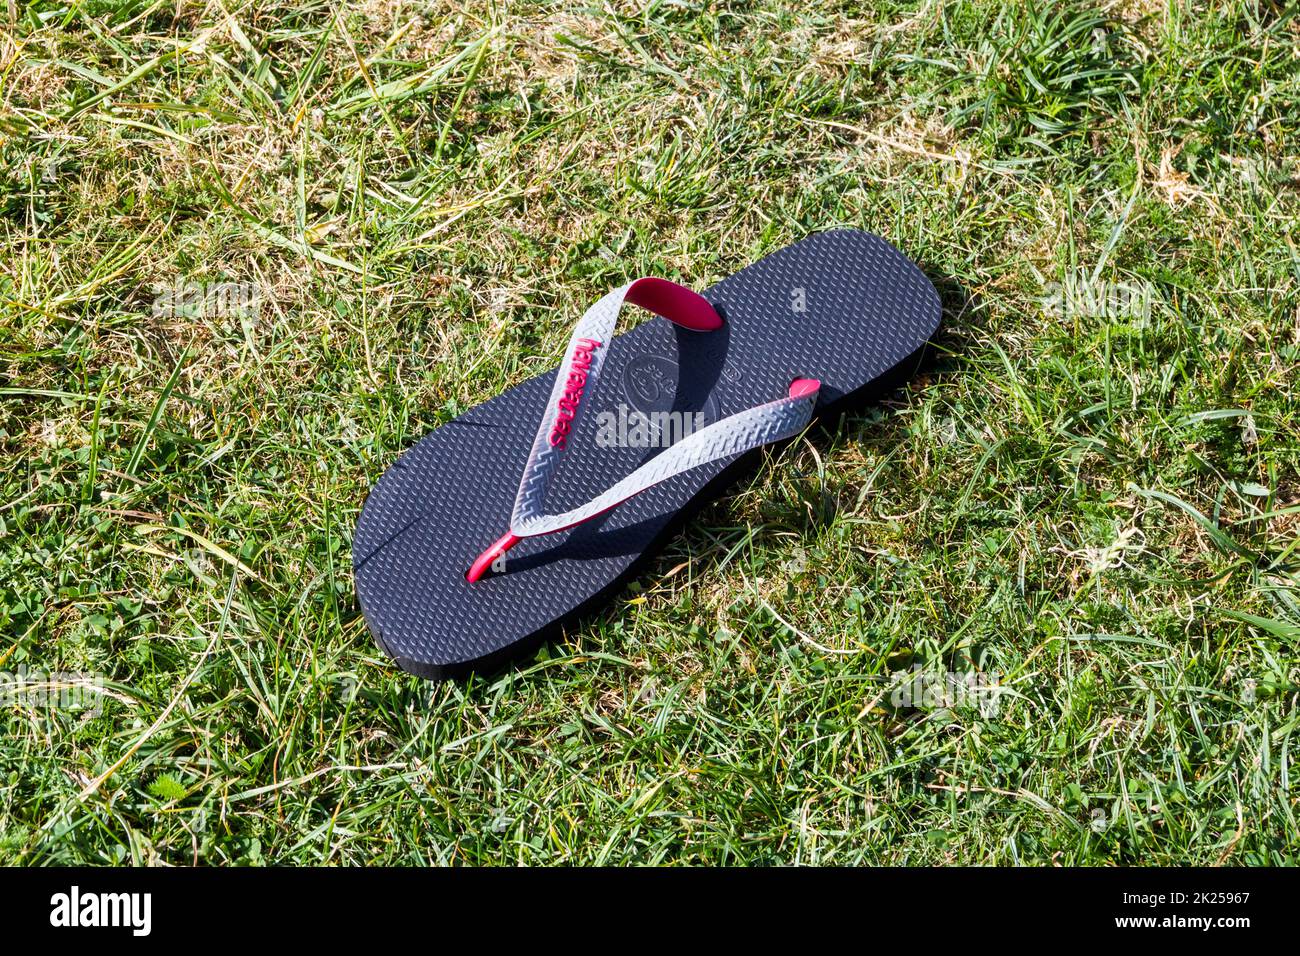 Ein verlorener oder verlassener Flip-Flop auf dem Gras Stockfoto